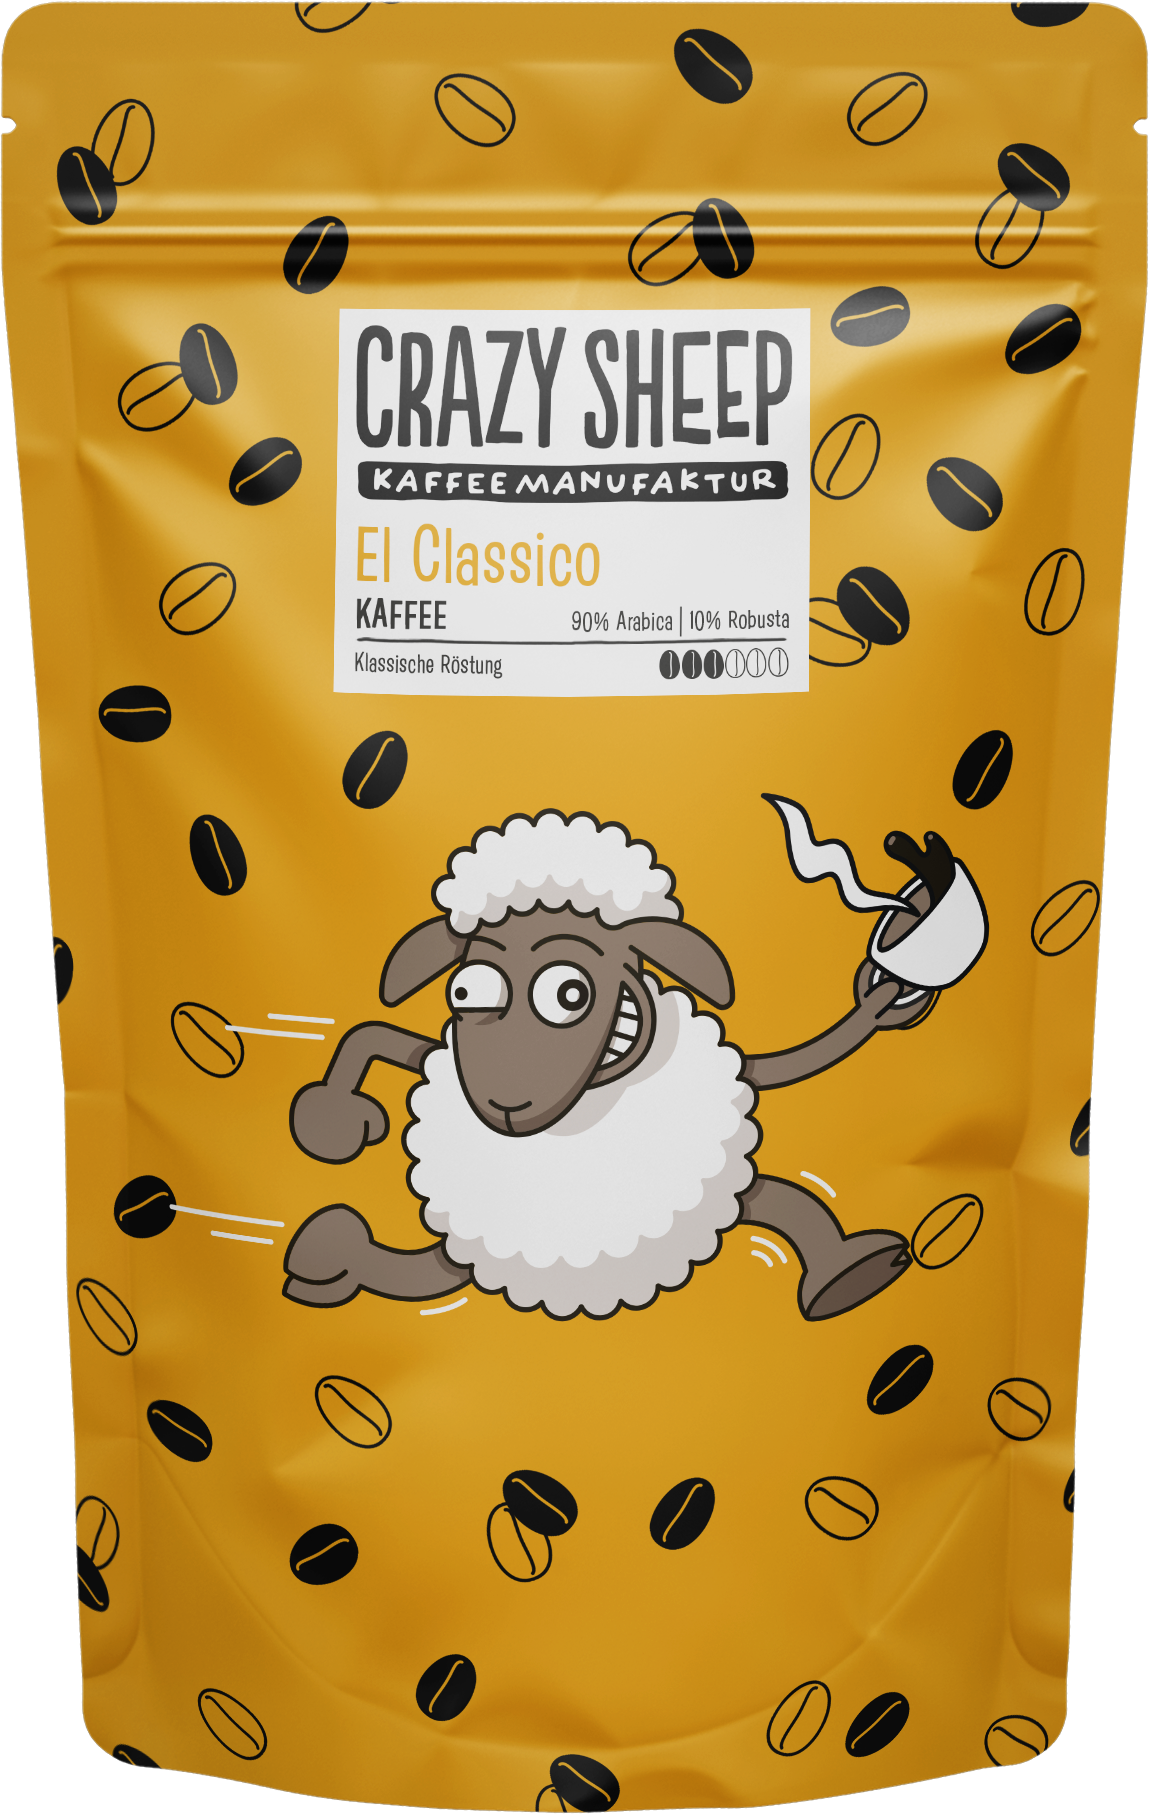 El Classico Crazy Sheep Kaffee